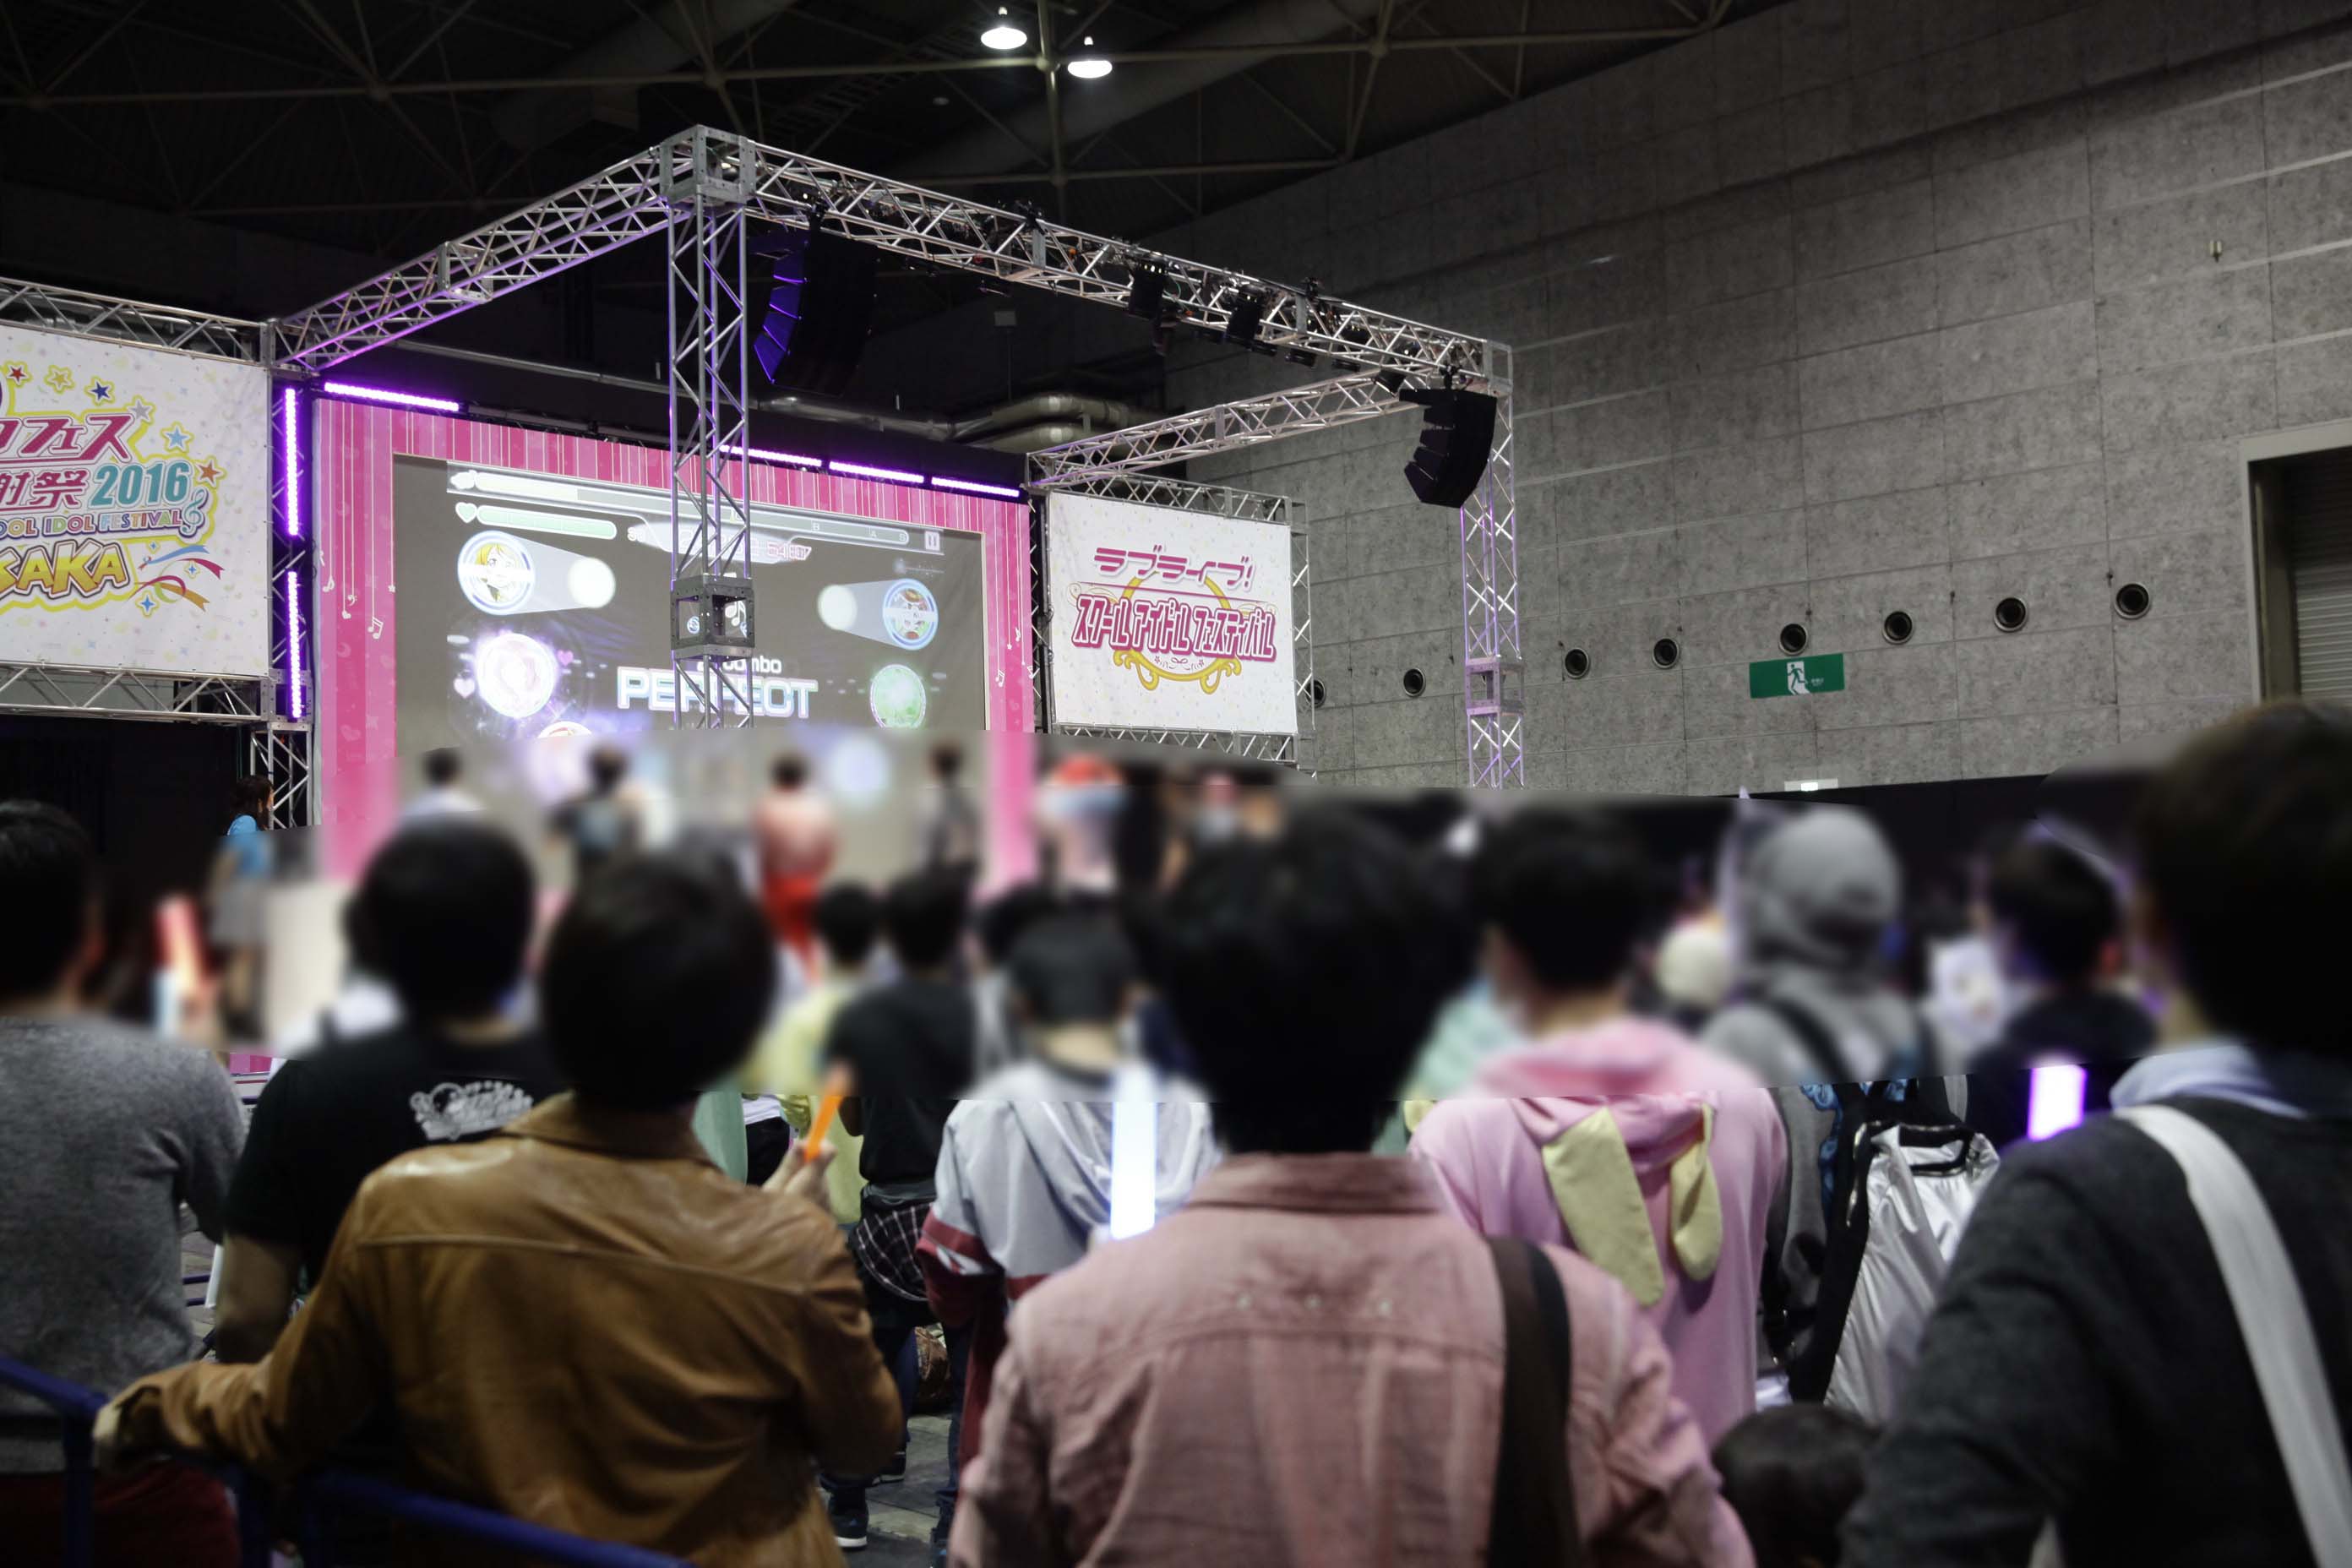 スクフェス 新情報も多数公開の スクフェス感謝祭16 Osaka が開催 大盛況のリアルイベントの模様やゲームの最新情報をお届け Boom App Games